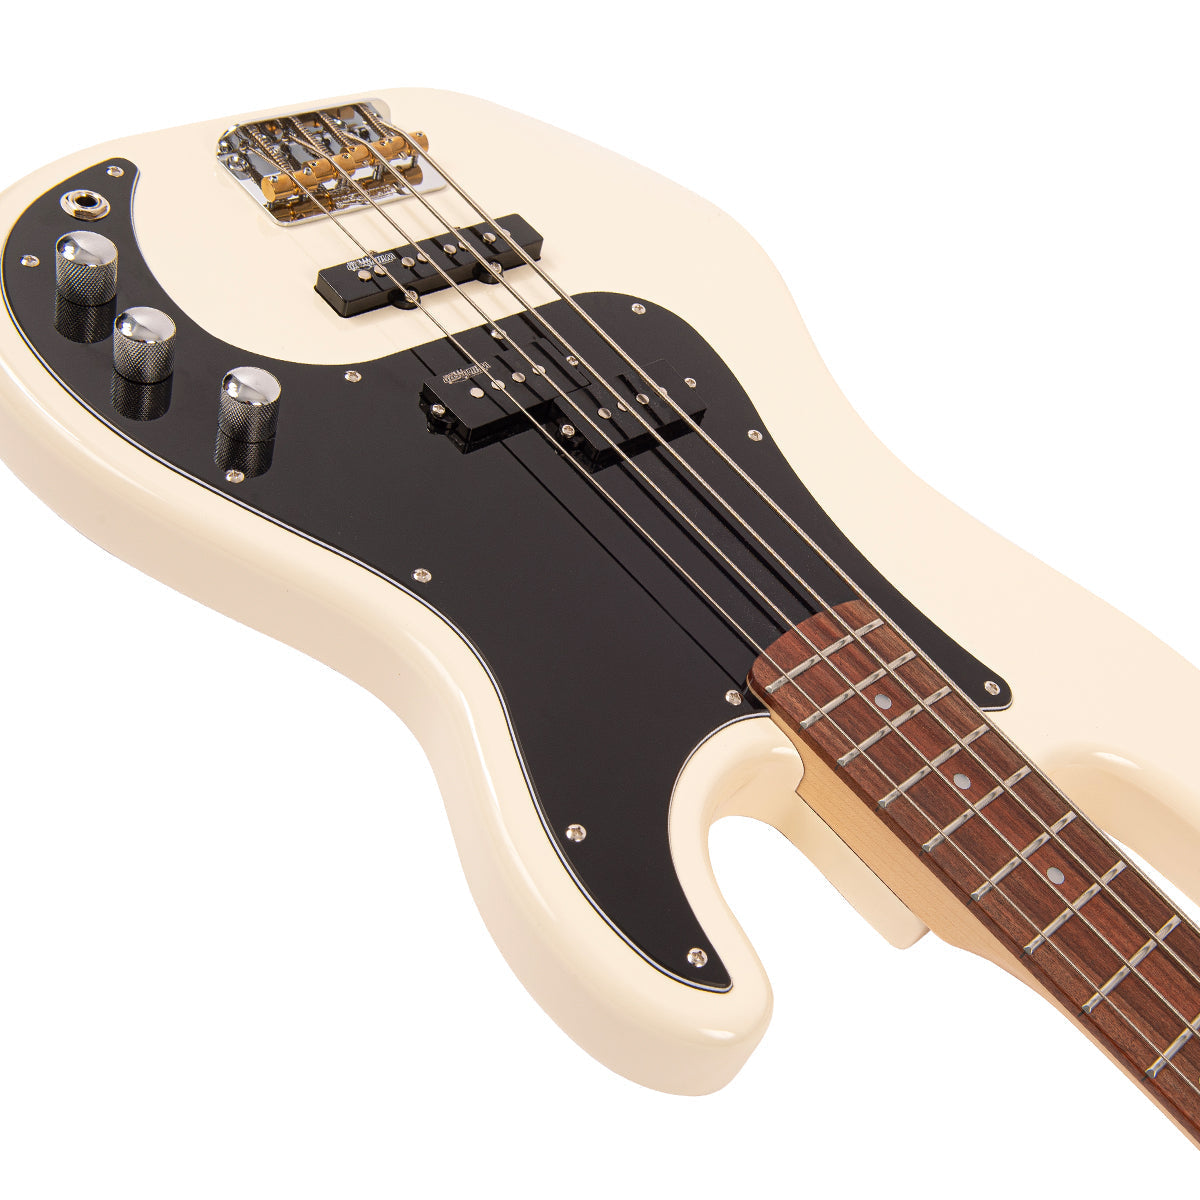 Vintage V42 ReIssued Bass Guitar ~ Vintage White, Bass Guitar for sale at Richards Guitars.